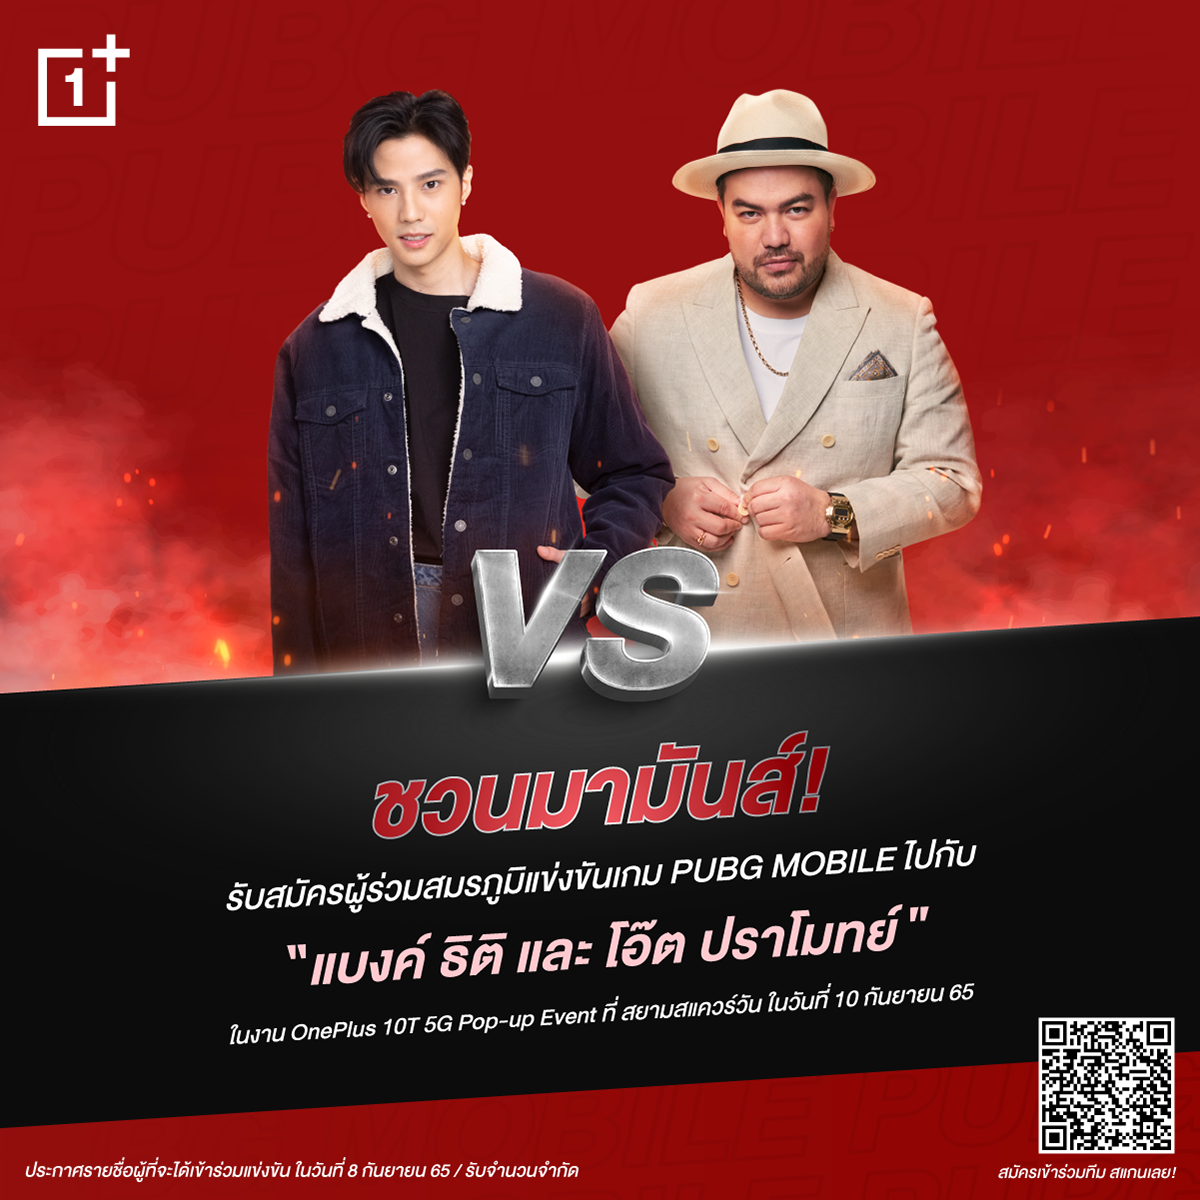 วันพลัส ประเทศไทย เชิญร่วมสัมผัสประสบการณ์ใหม่ OnePlus 10T 5G ในงาน OnePlus 10T 5G Pop-up Event